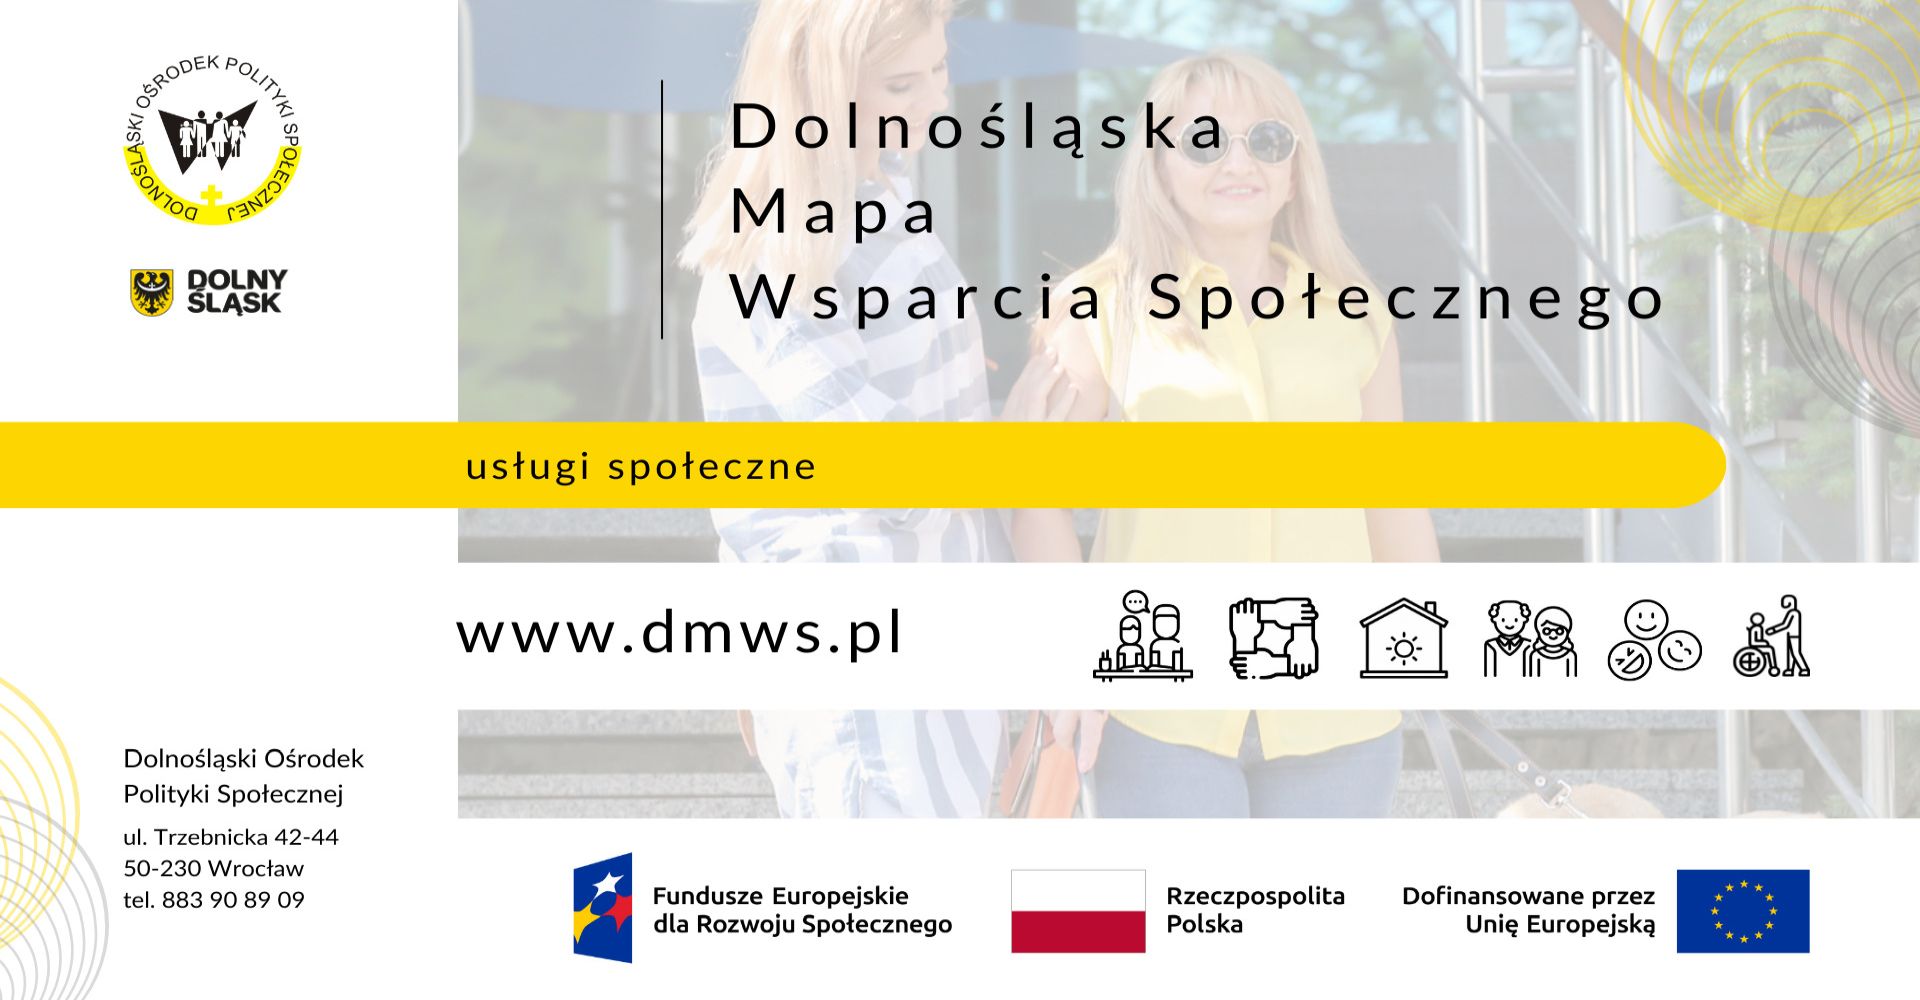 plakat DOLNOŚLĄSKA MAPA WSPARCI SPOŁECZNEGO - usługi społeczne, www.dmws.pl